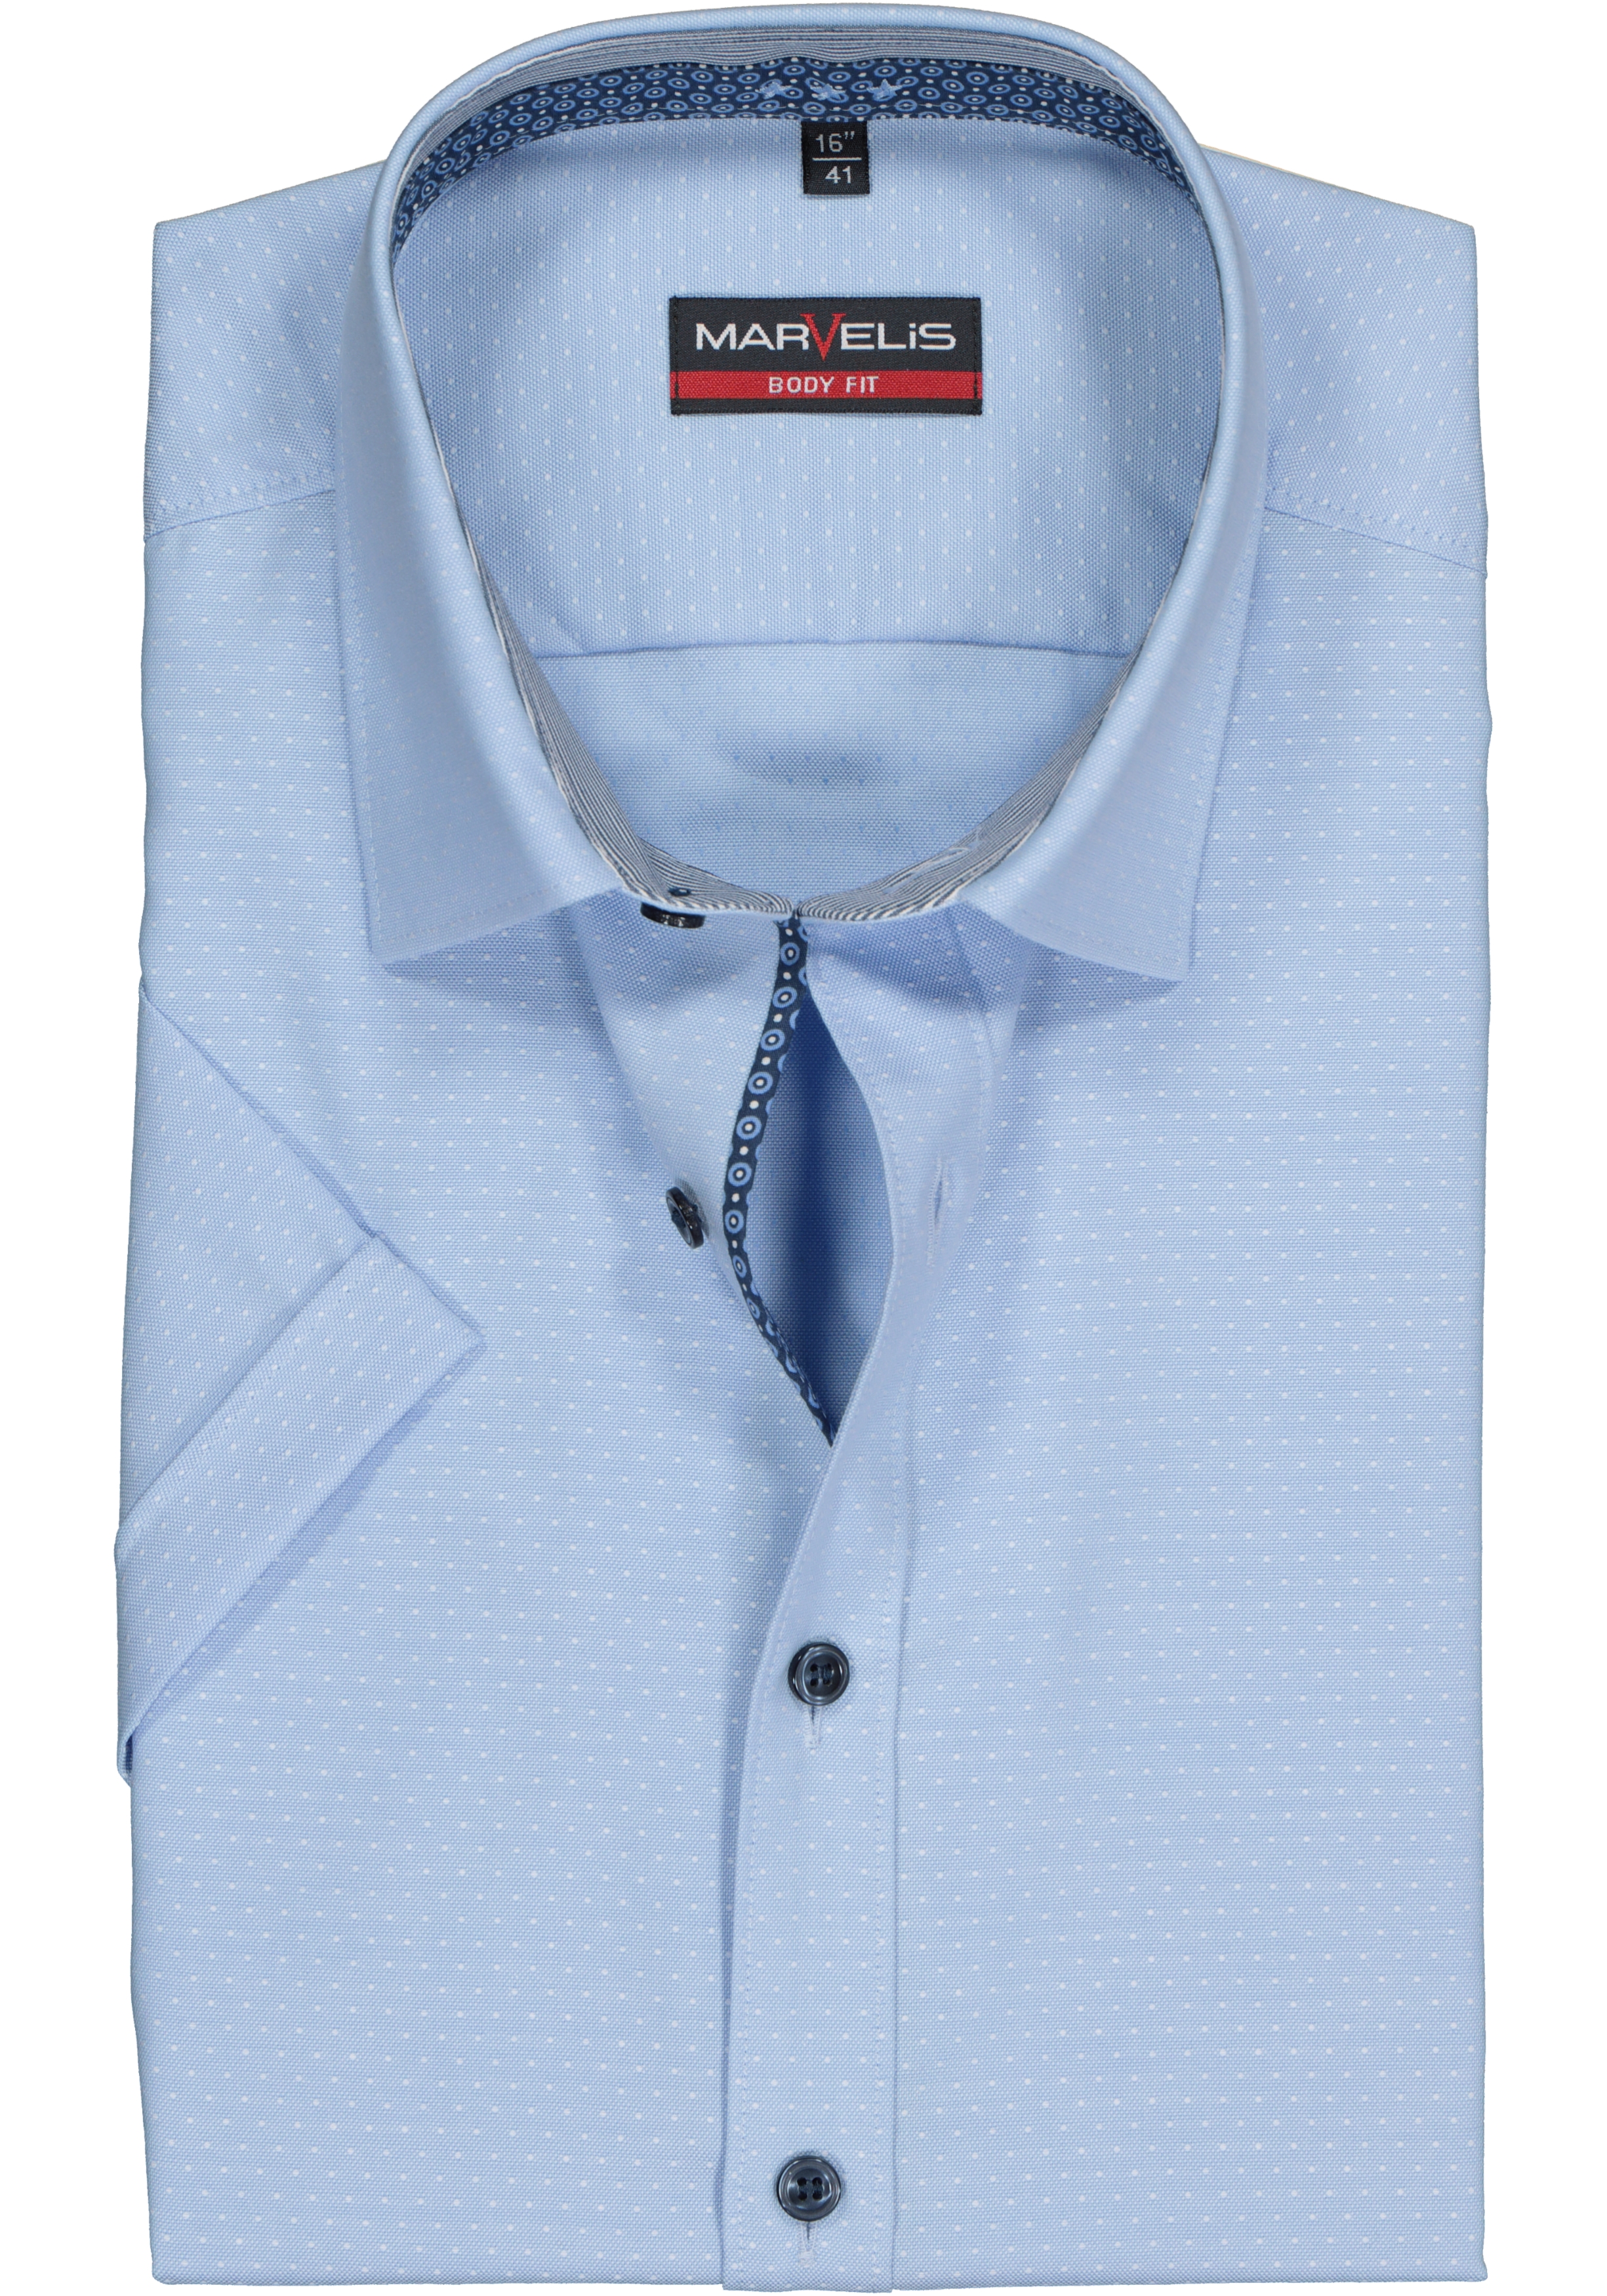 MARVELIS body fit overhemd, korte mouw, lichtblauw met wit gestipt structuur (contrast)